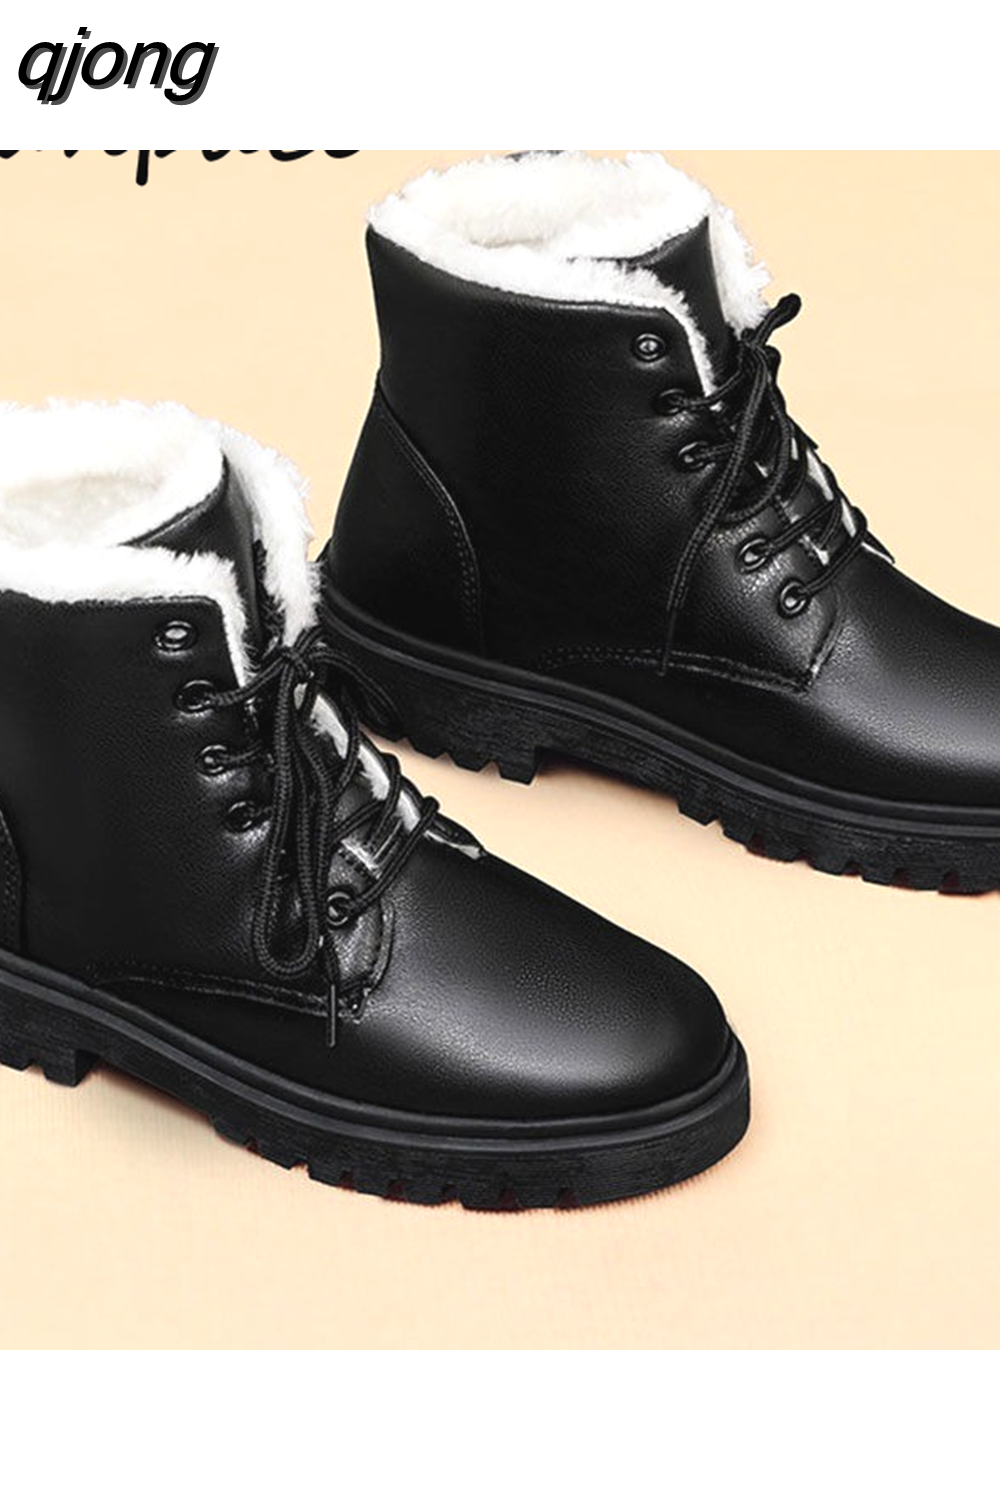 qjong New Snow Boots Plus Velvet Cotton Shoes Patent Leather Womens Platform Heels Shoes Lace-up Short Plush Warm Women&#39;s Shoes